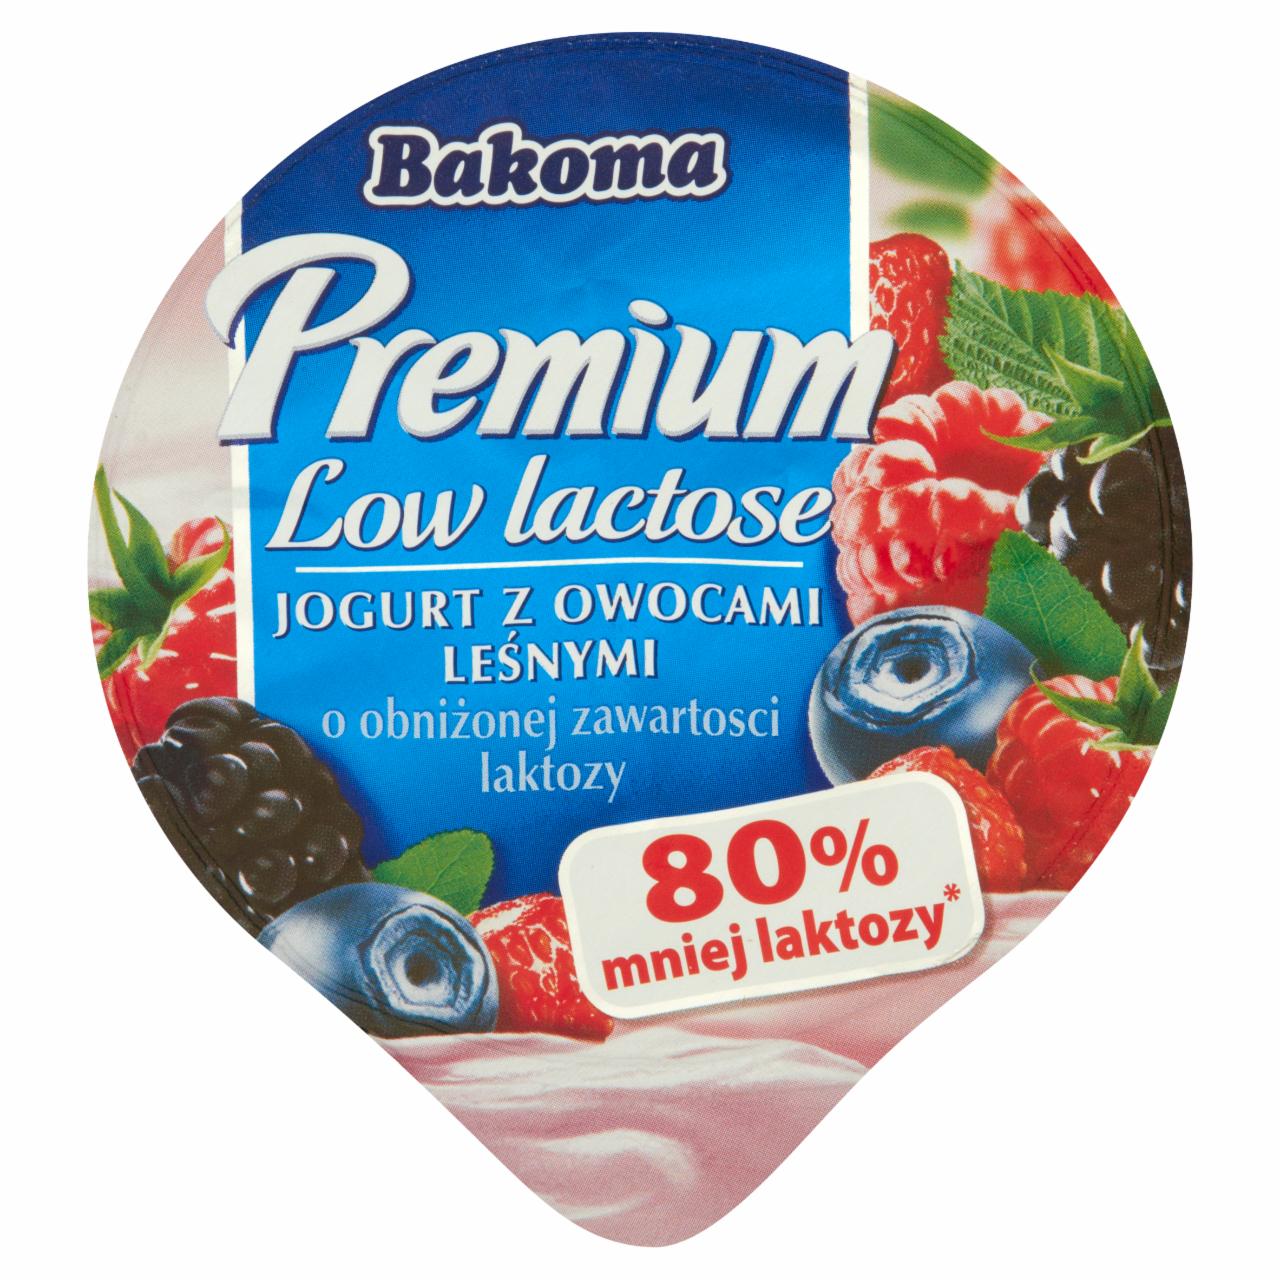 Zdjęcia - Bakoma Premium Low lactose Jogurt z owocami leśnymi o obniżonej zawartości laktozy 140 g